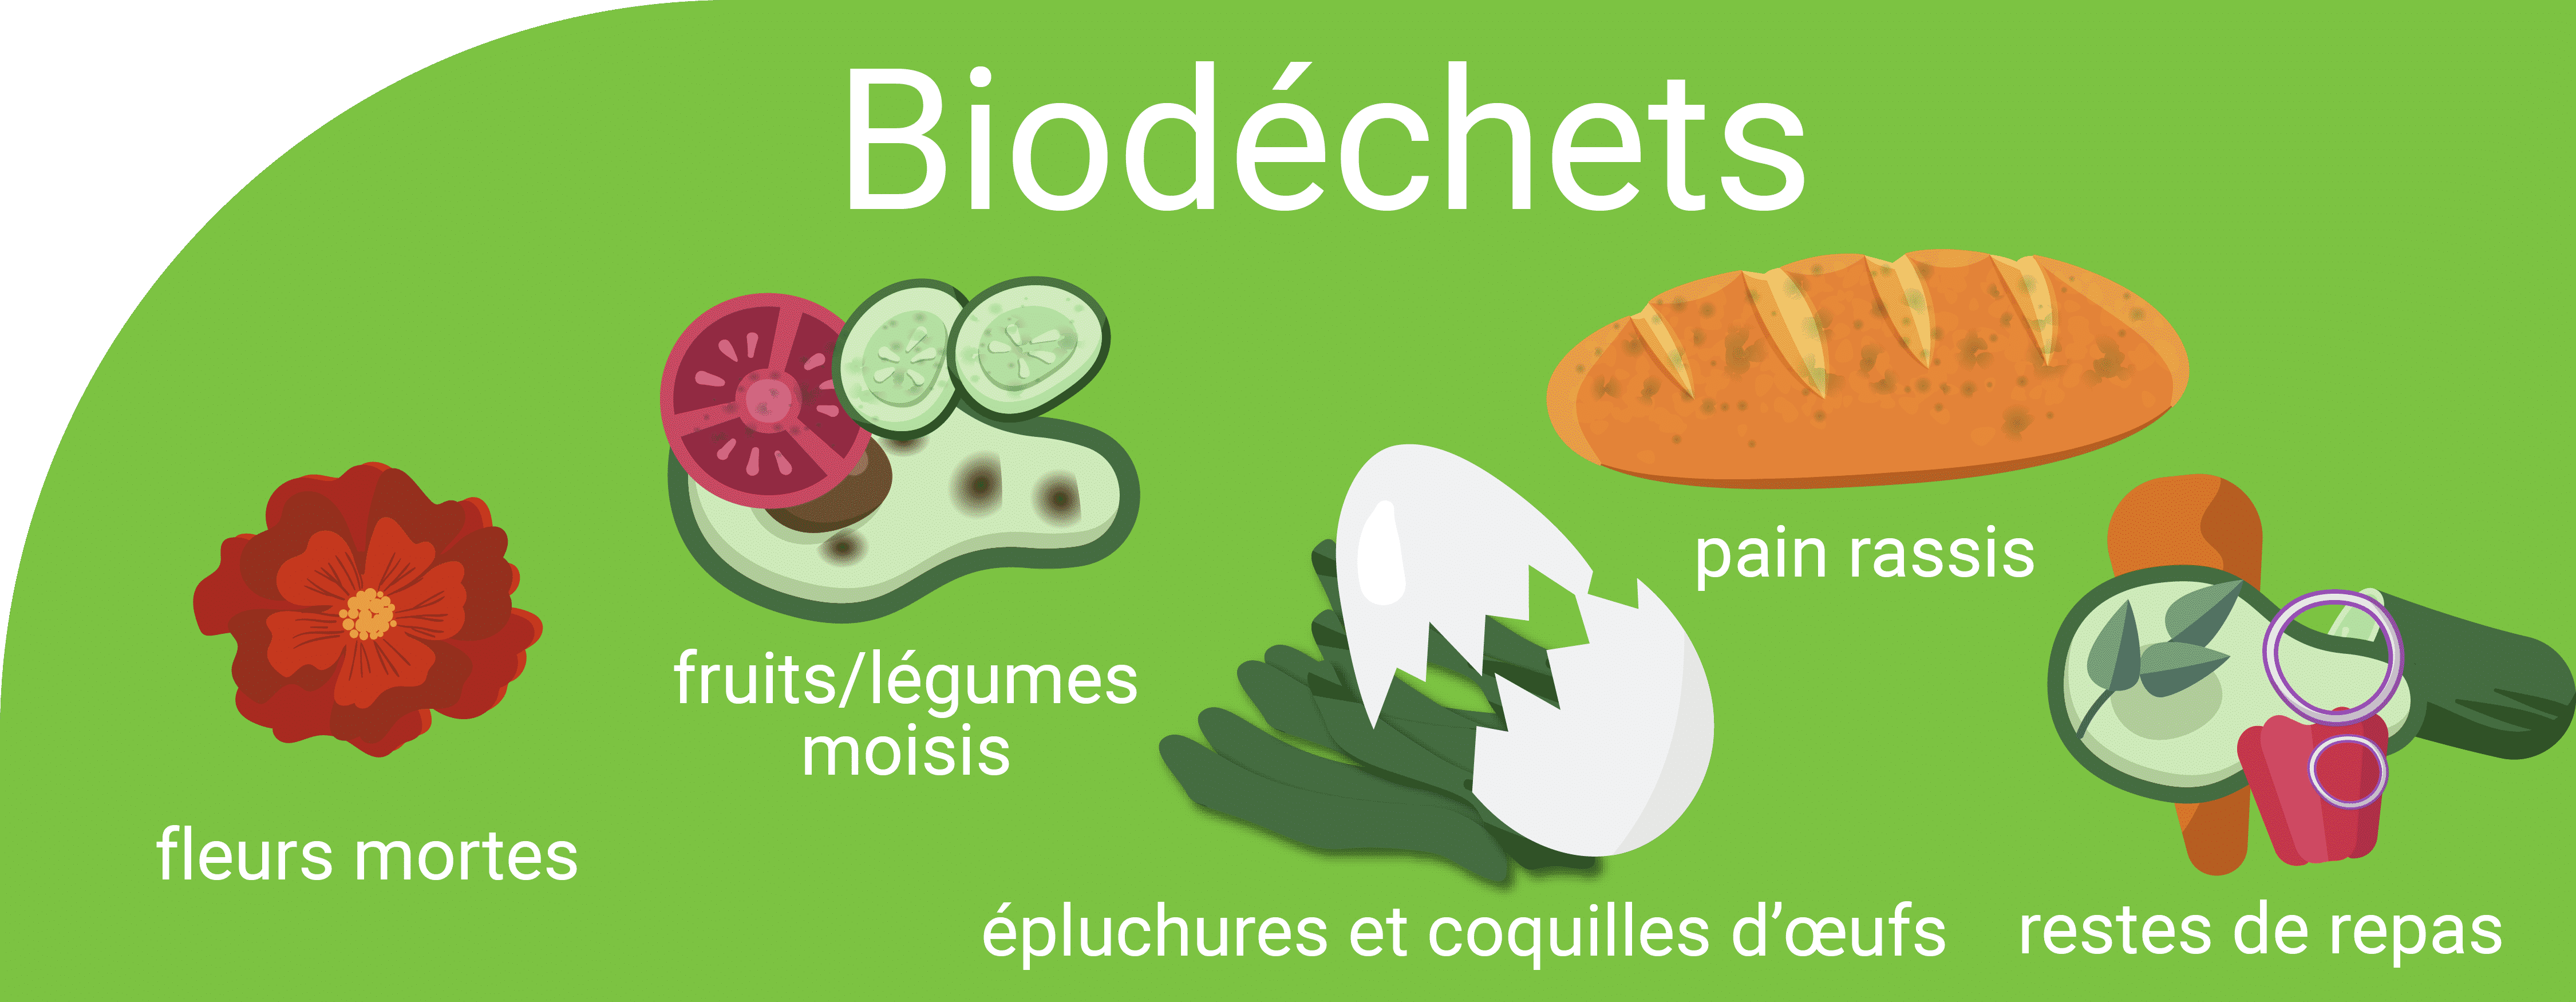 Biodéchets : végétaux, restes de repas, pain rassis, épluchures et coquilles d’œufs